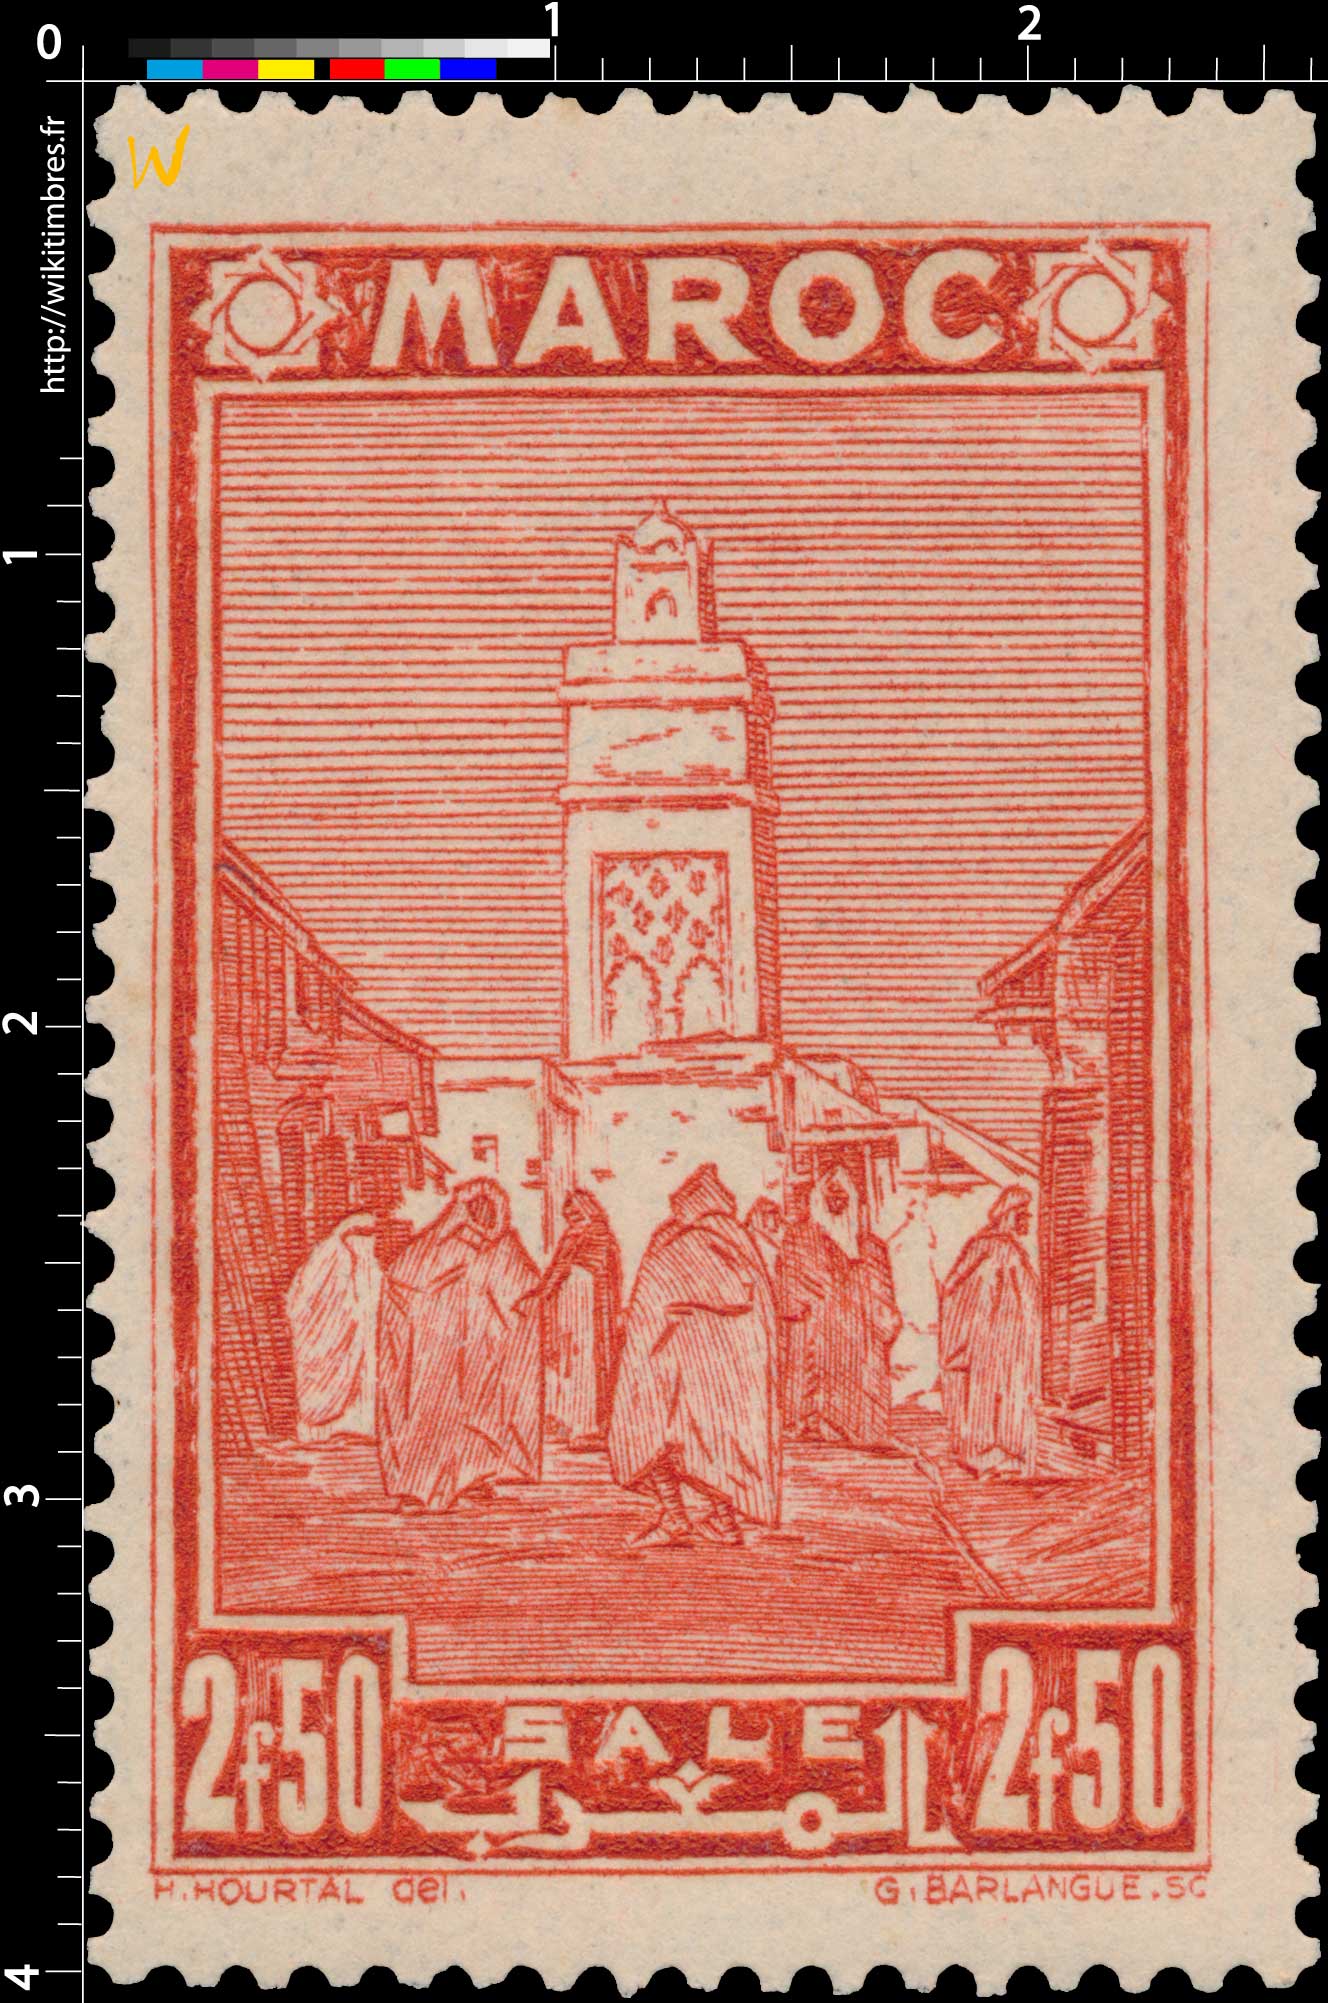 1939 Maroc - Mosquée de Salé